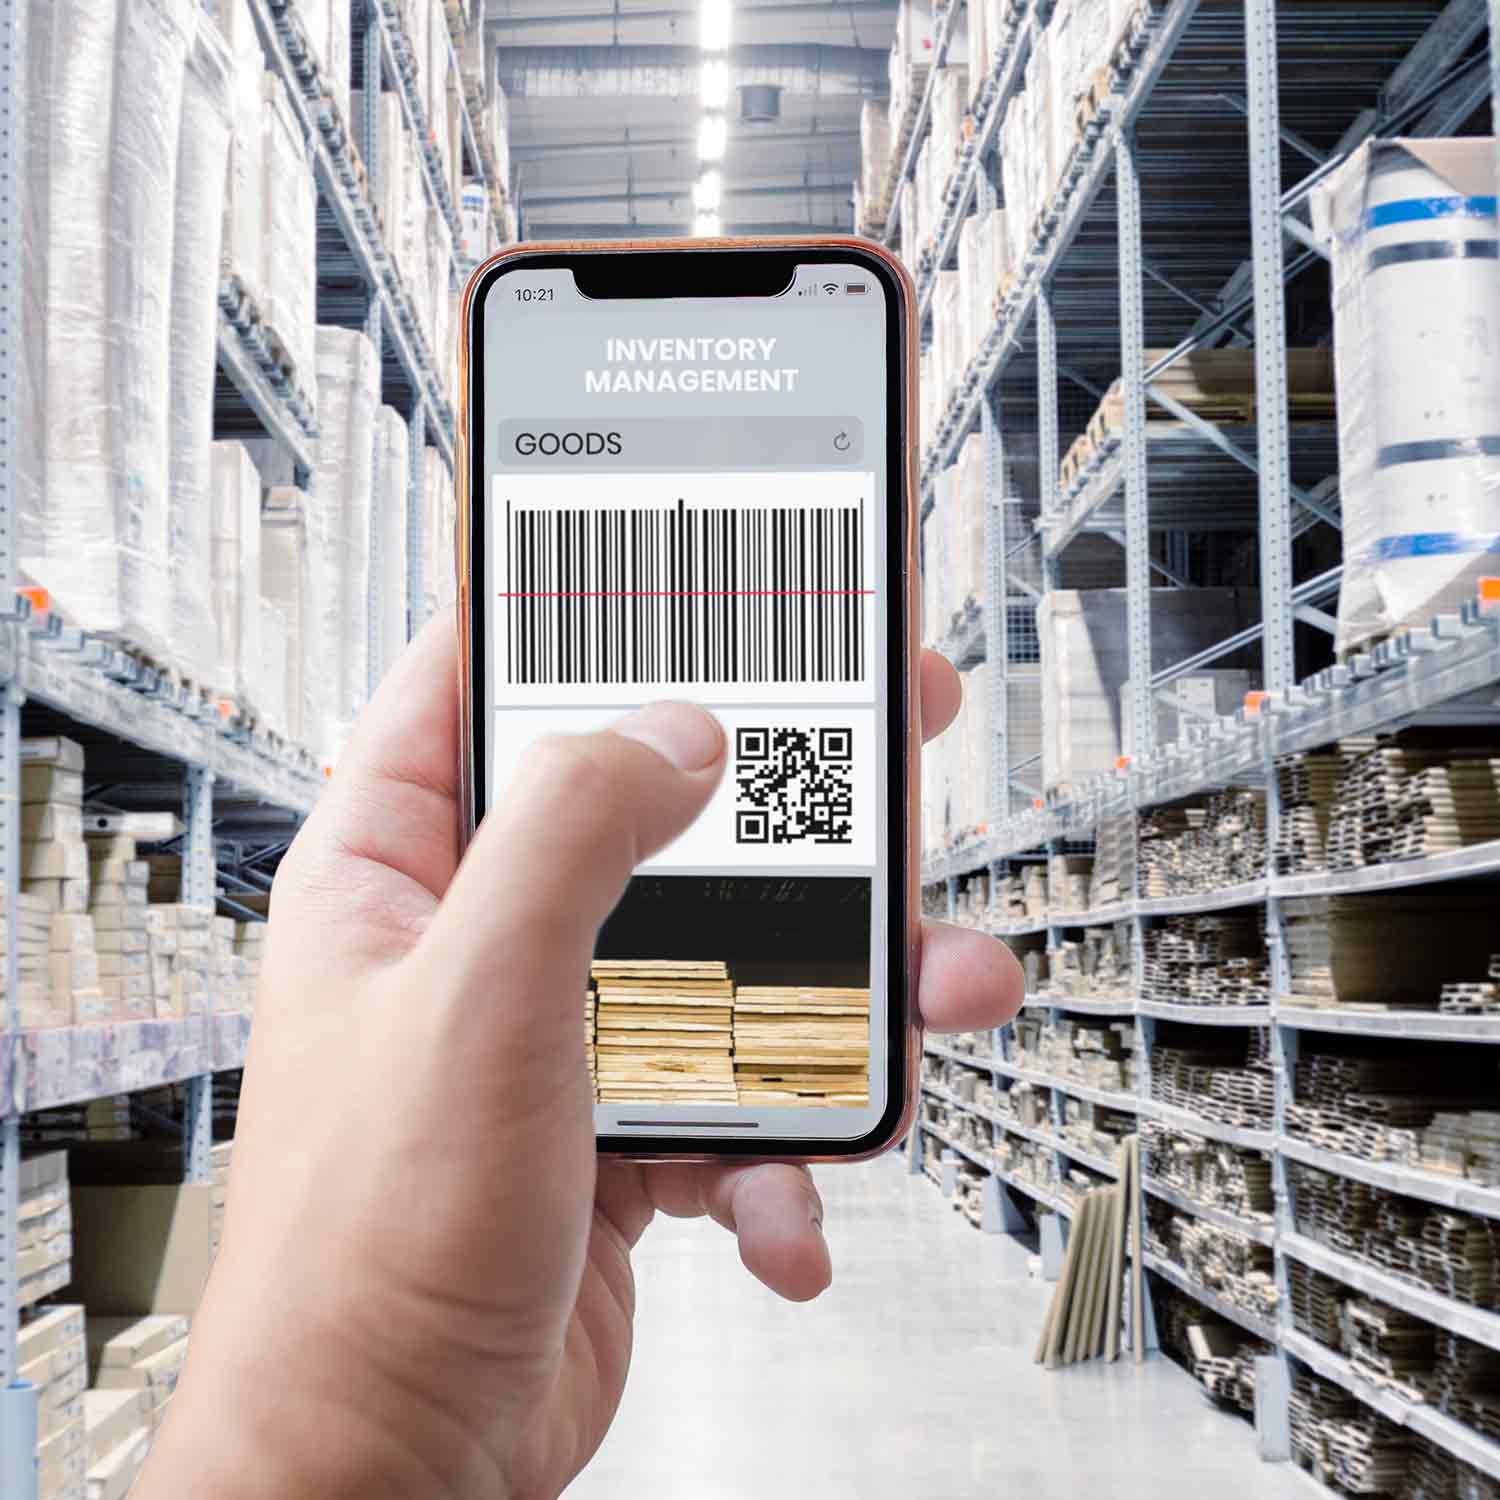 Les codes sont scannés à l’aide d’un téléphone portable dans l’entrepôt